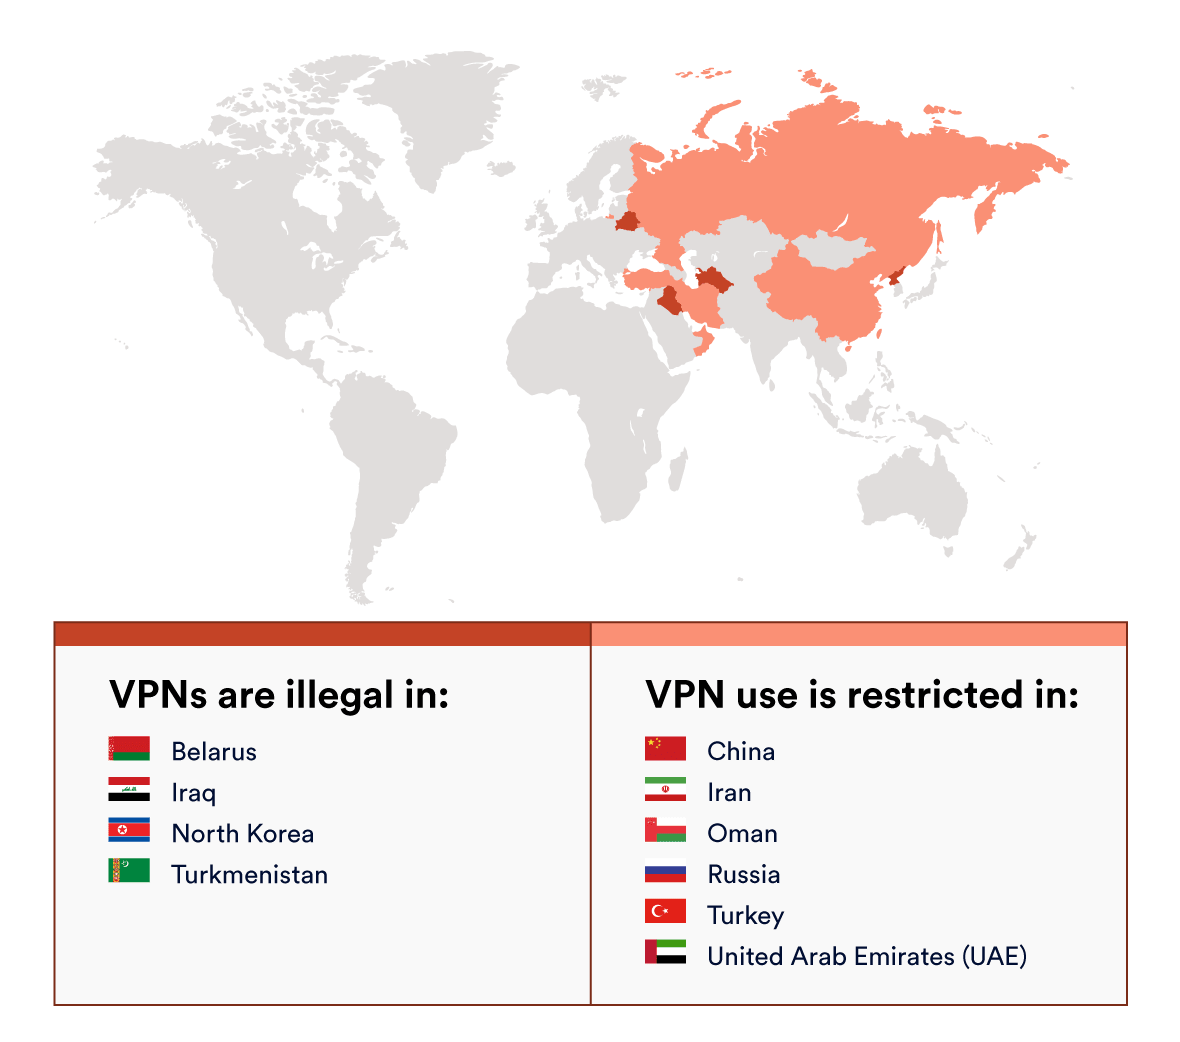 Karte zeigt, wo VPNs illegal oder eingeschränkt sind